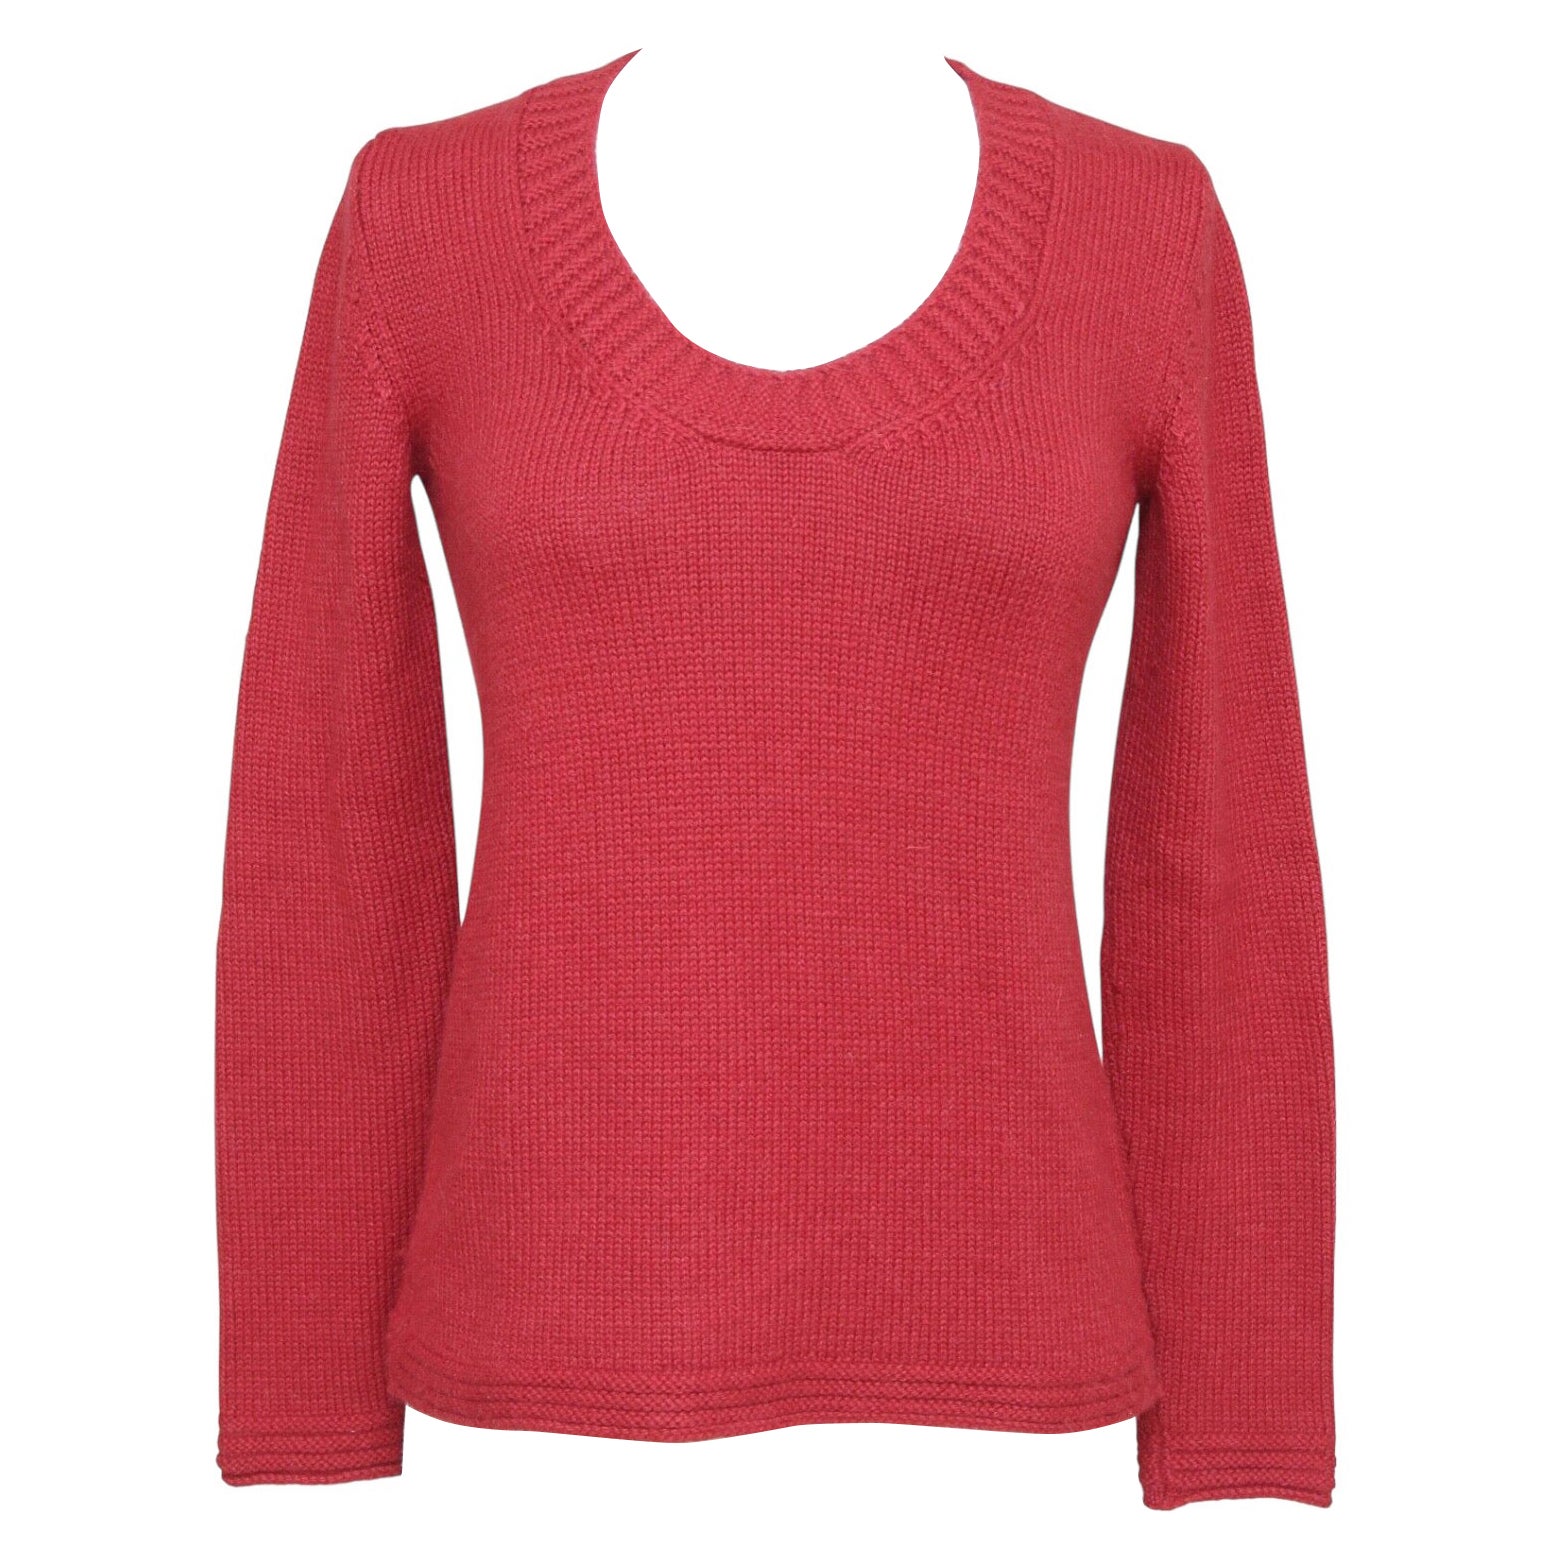 CHLOE - Chemise en tricot à manches longues et col en alpaga rouge, taille XS